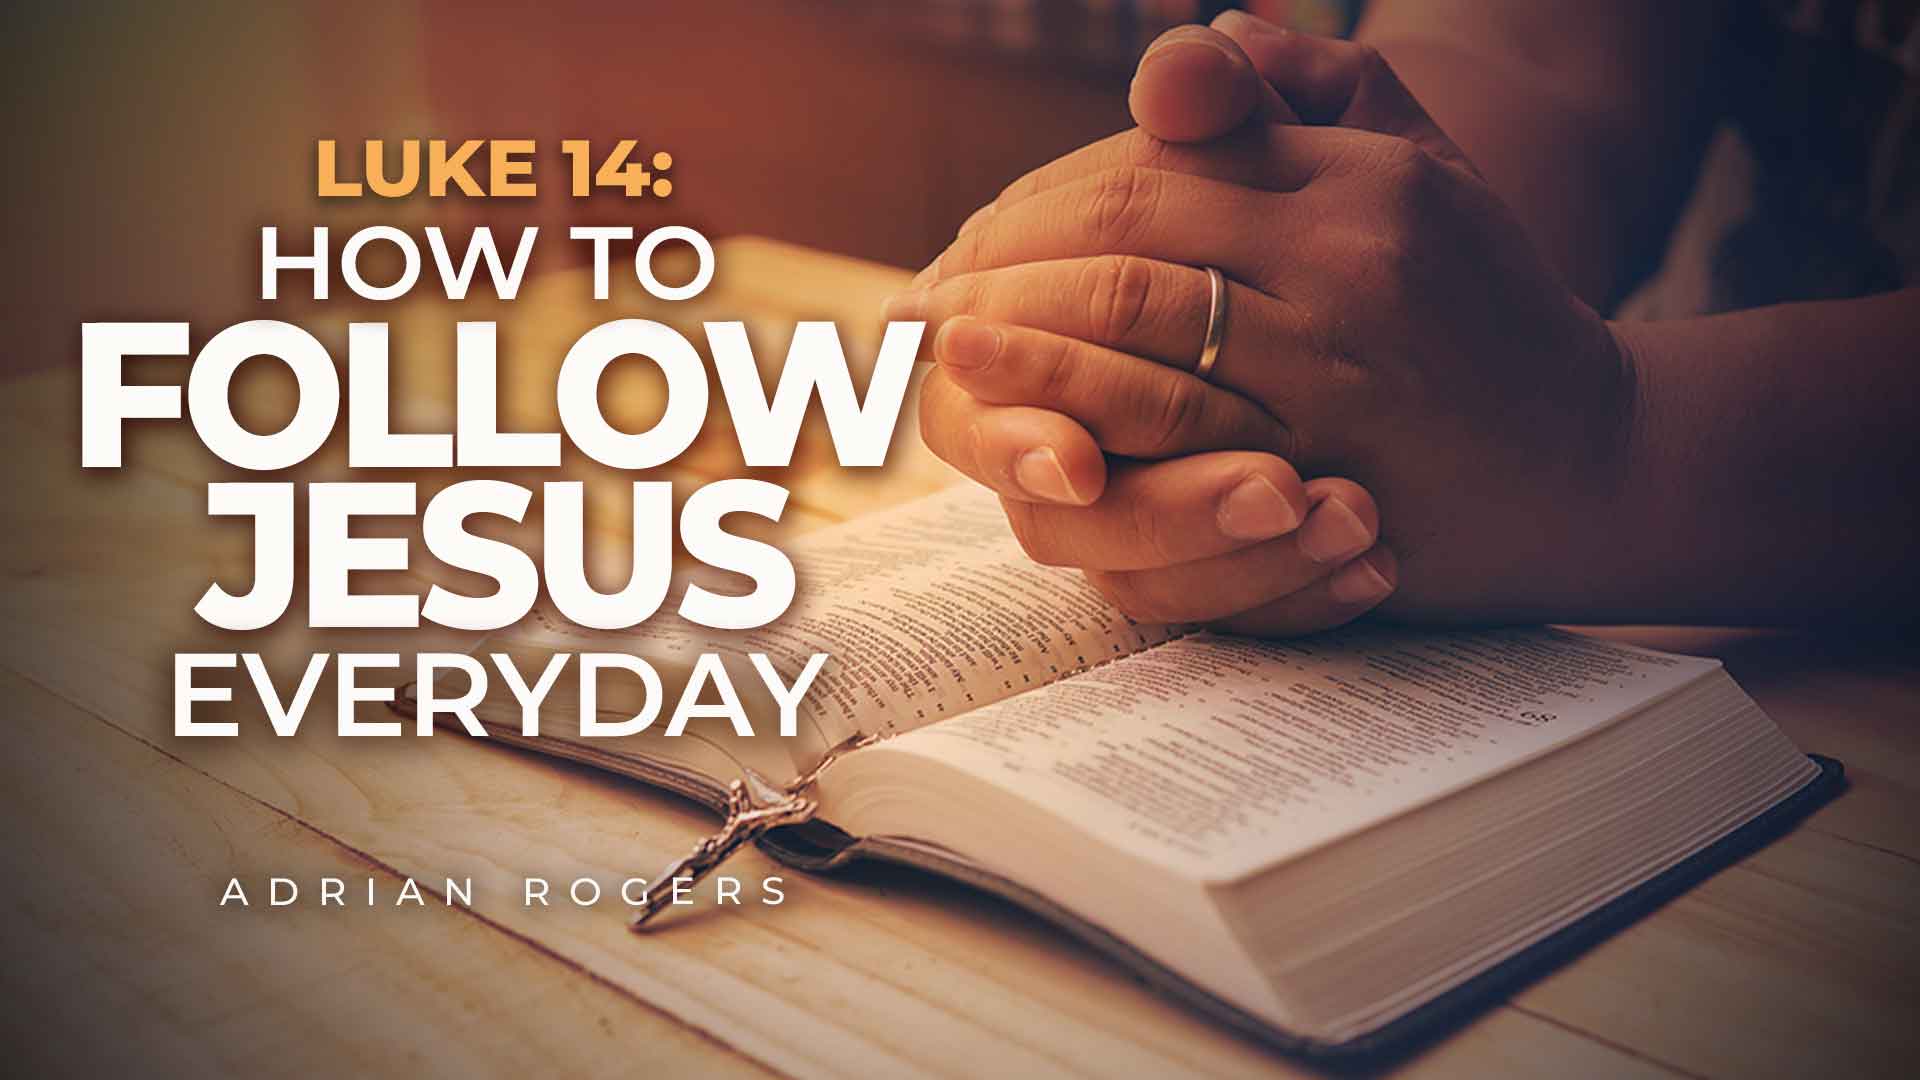 Luke 14 How to Follow Jesus Every Day 1920x1080